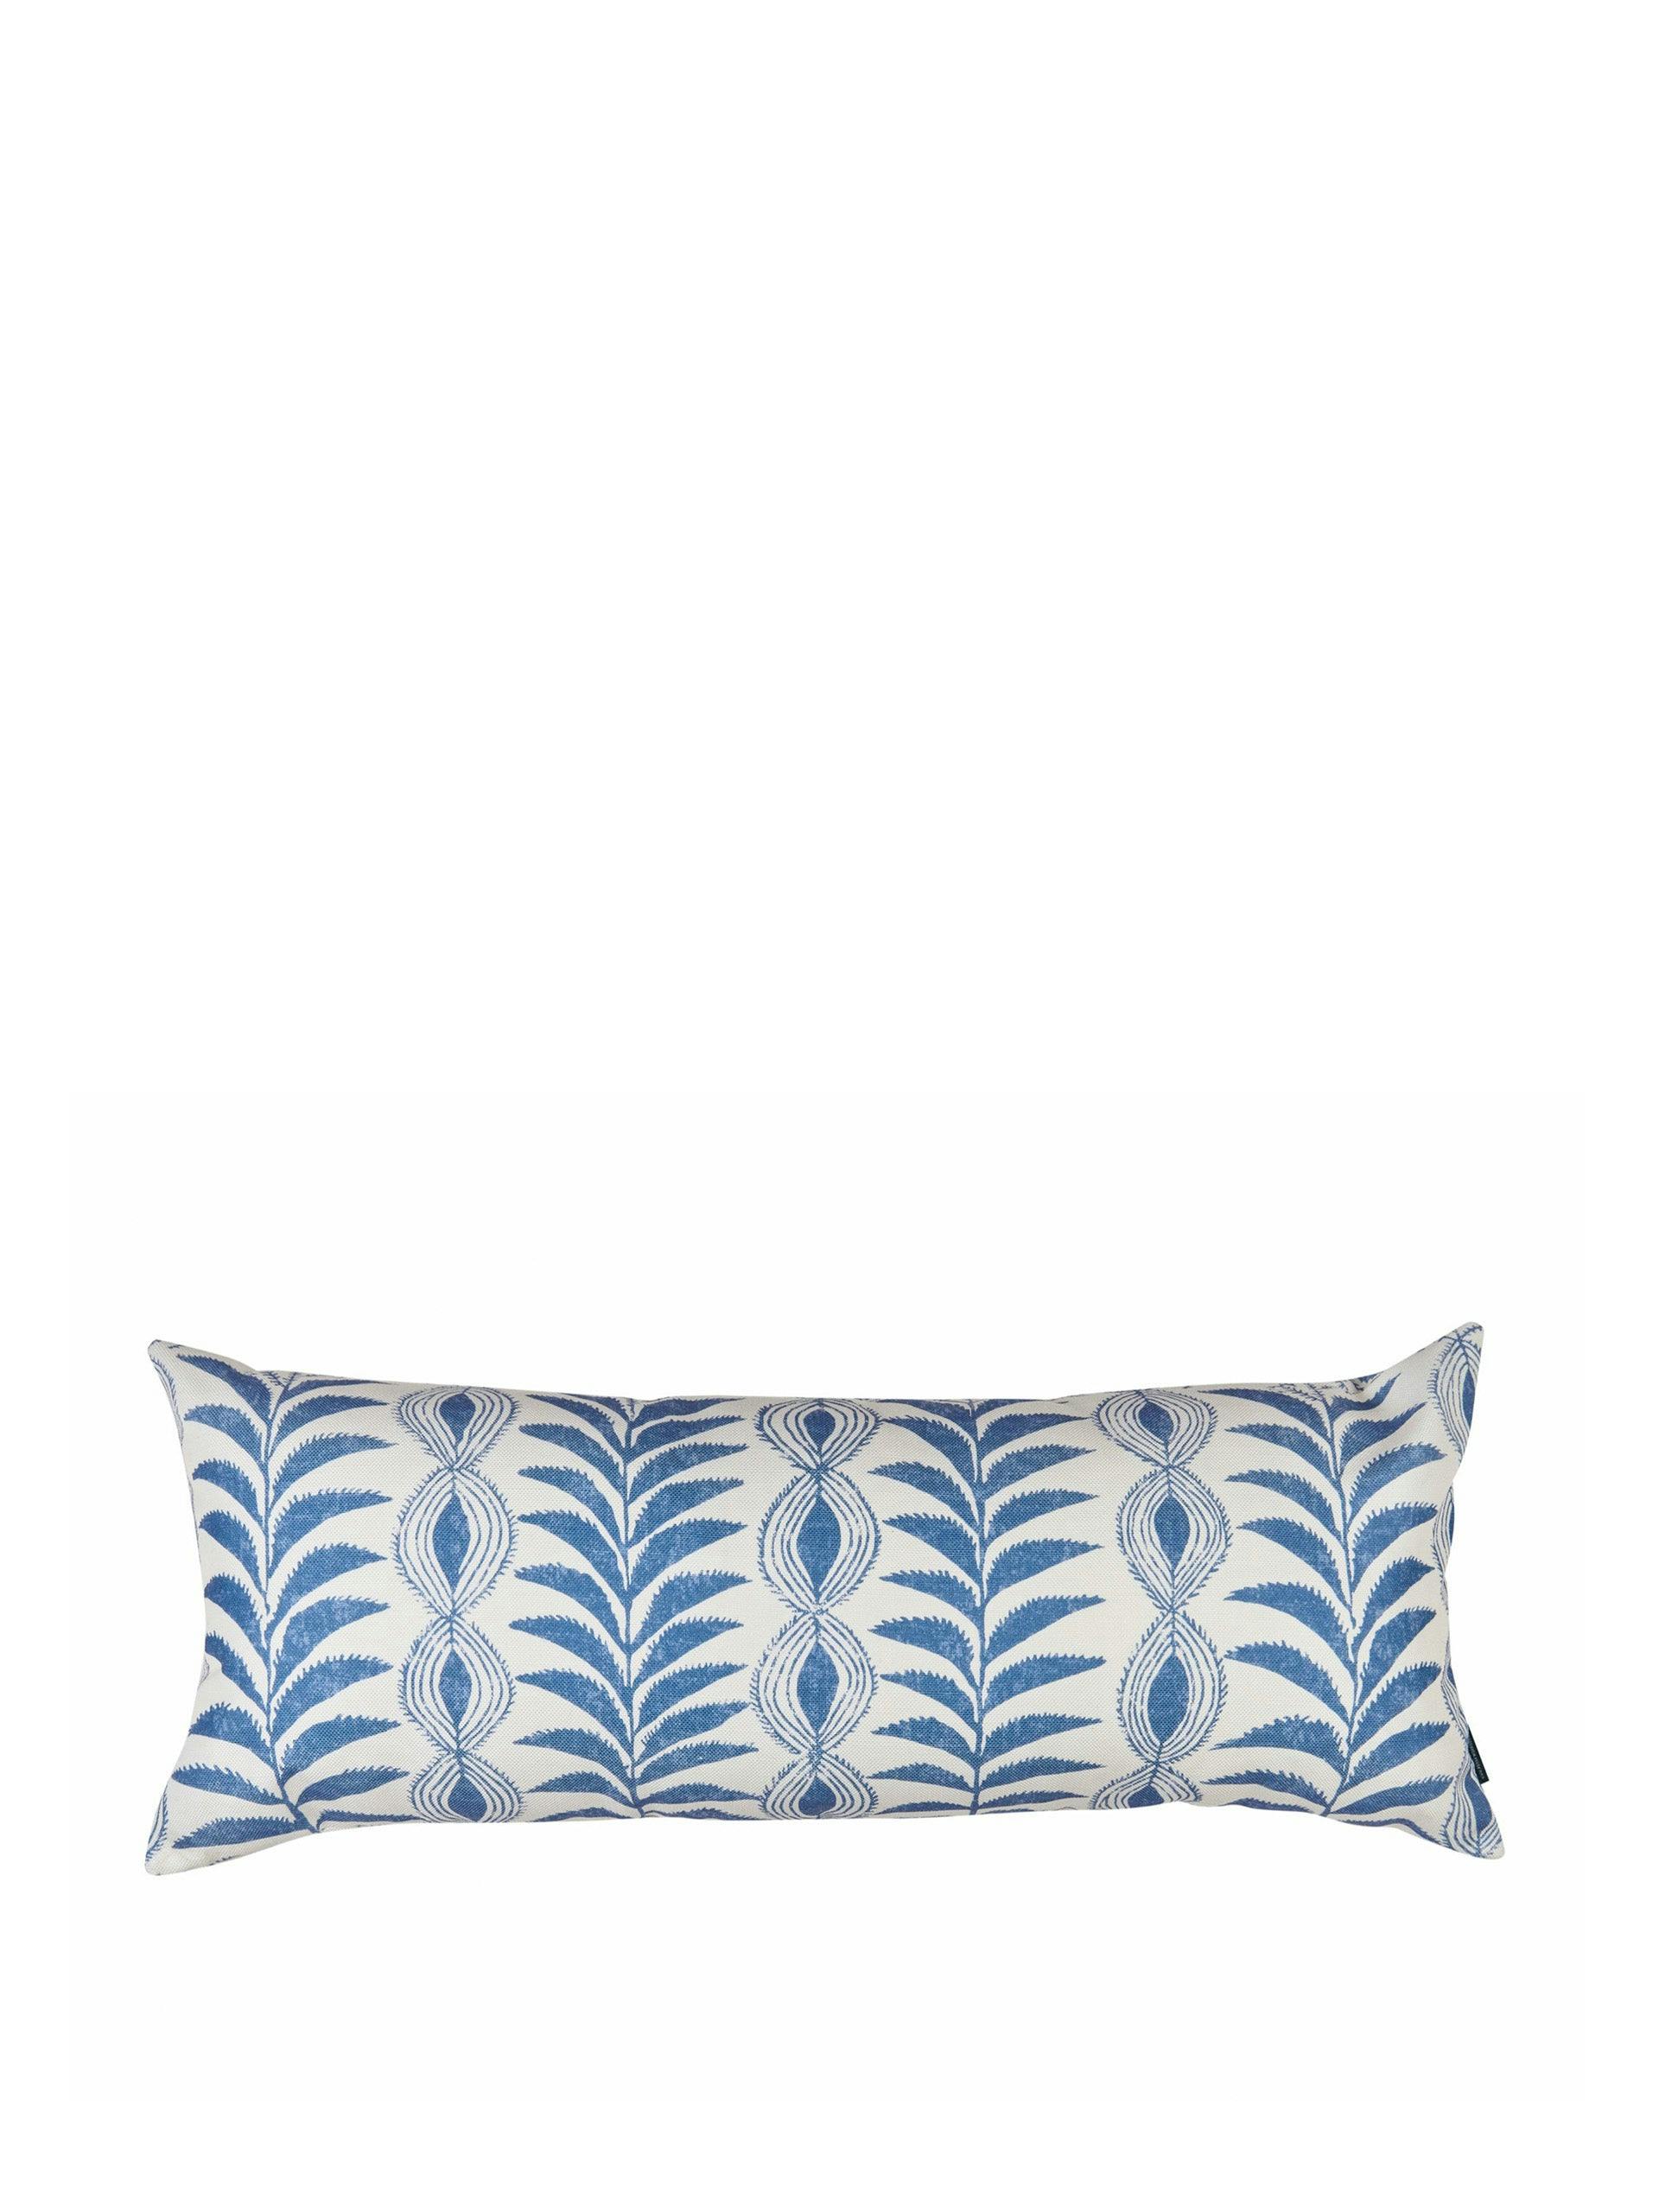 Zanzibar blue outdoor long cushion